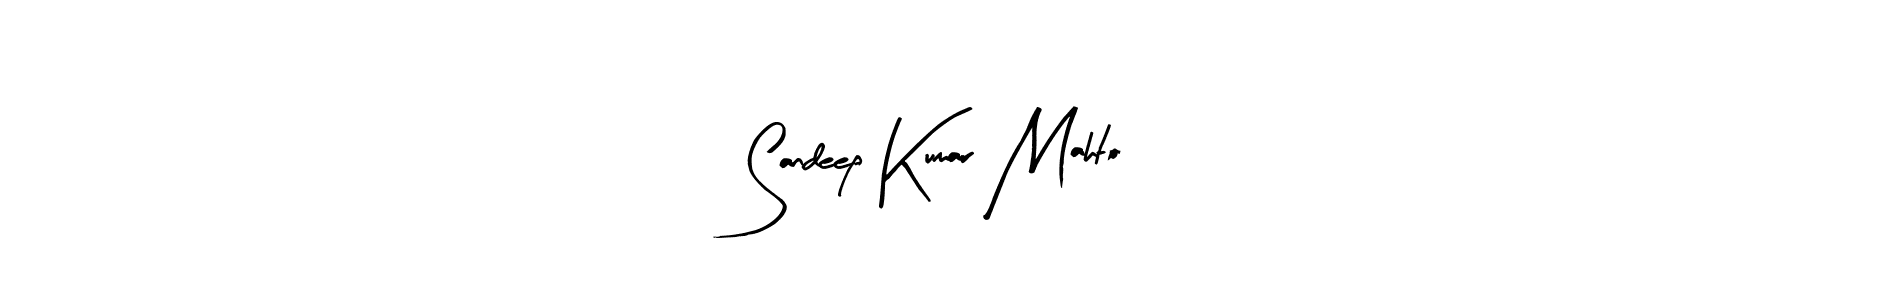 How to Draw Sandeep Kumar Mahto signature style? Arty Signature is a latest design signature styles for name Sandeep Kumar Mahto. Sandeep Kumar Mahto signature style 8 images and pictures png